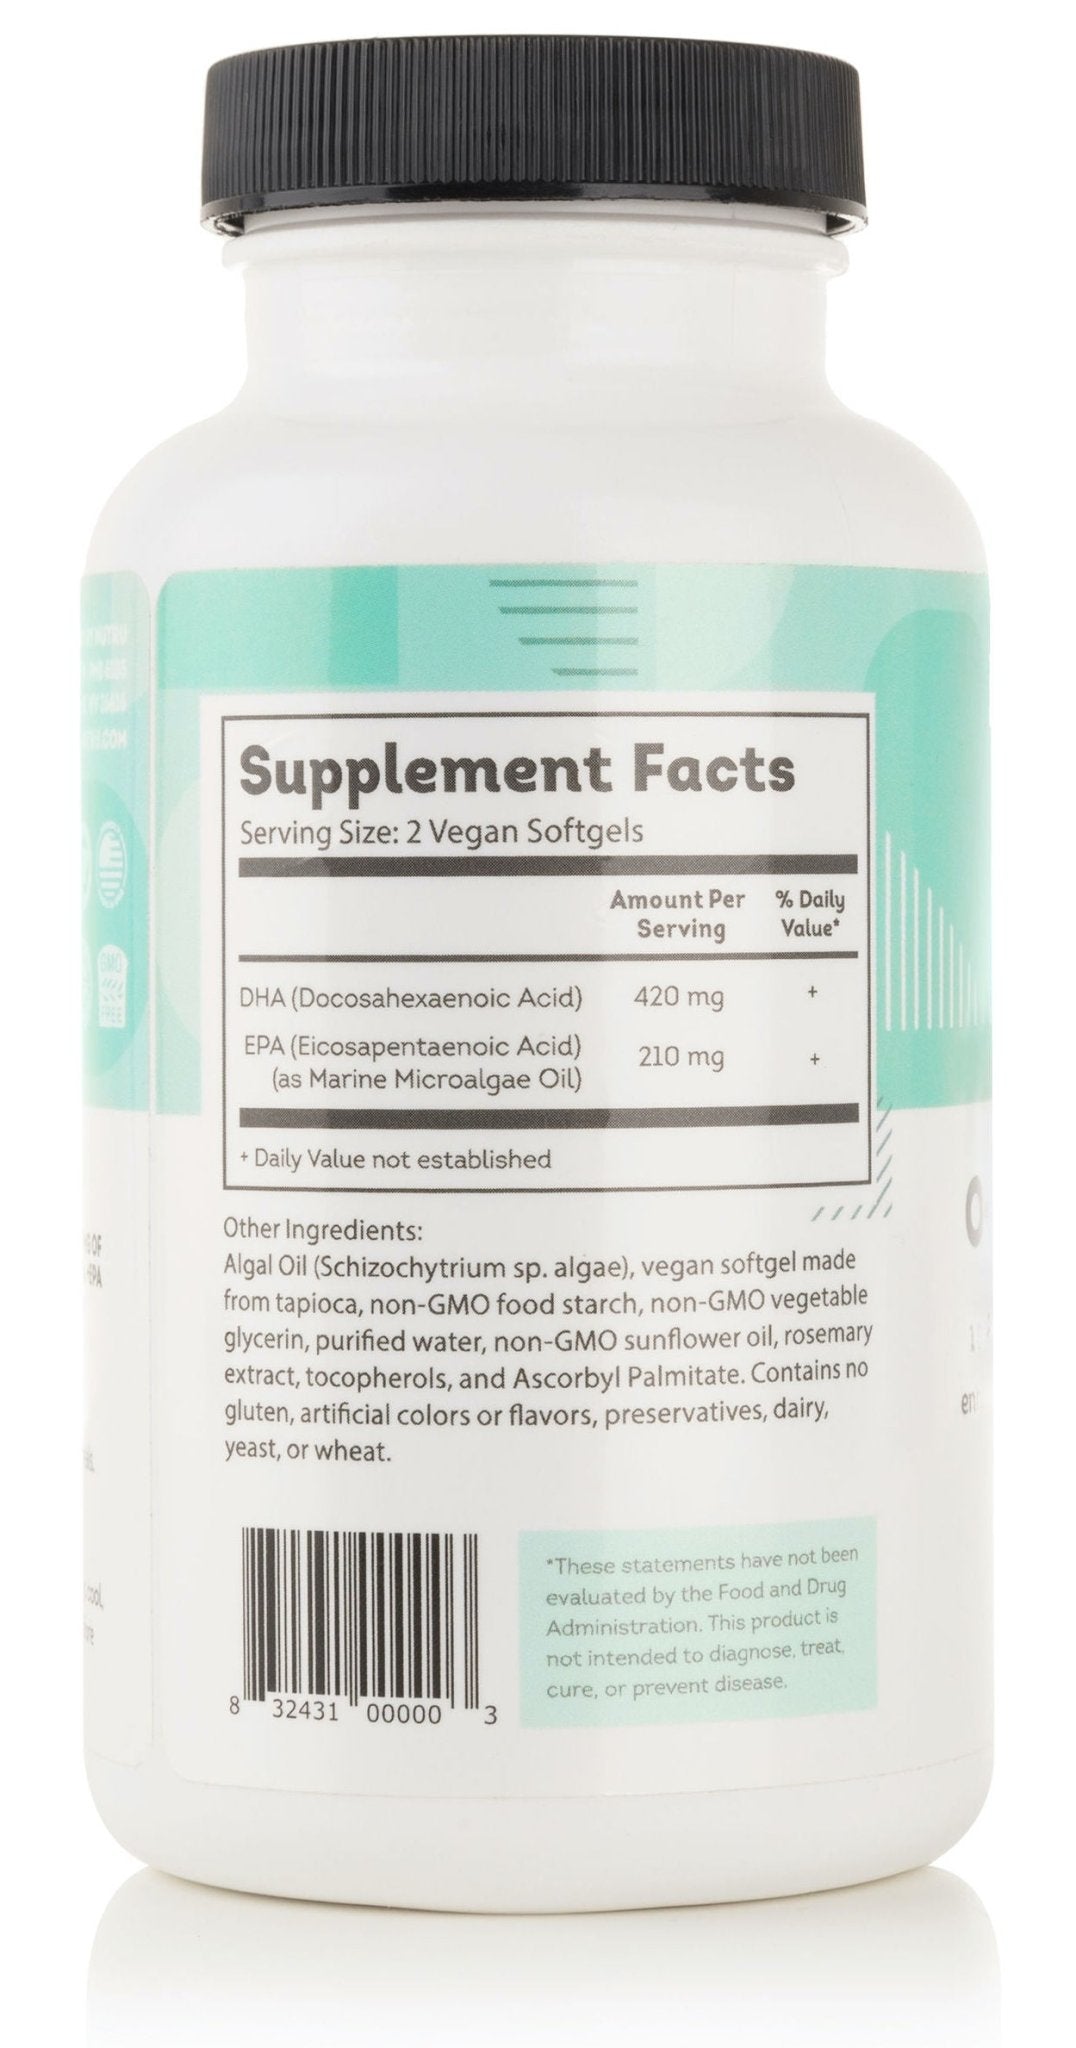 O-Mega-Zen3 Vegan + EPA Supplement, 120 softgels - Natural Zing